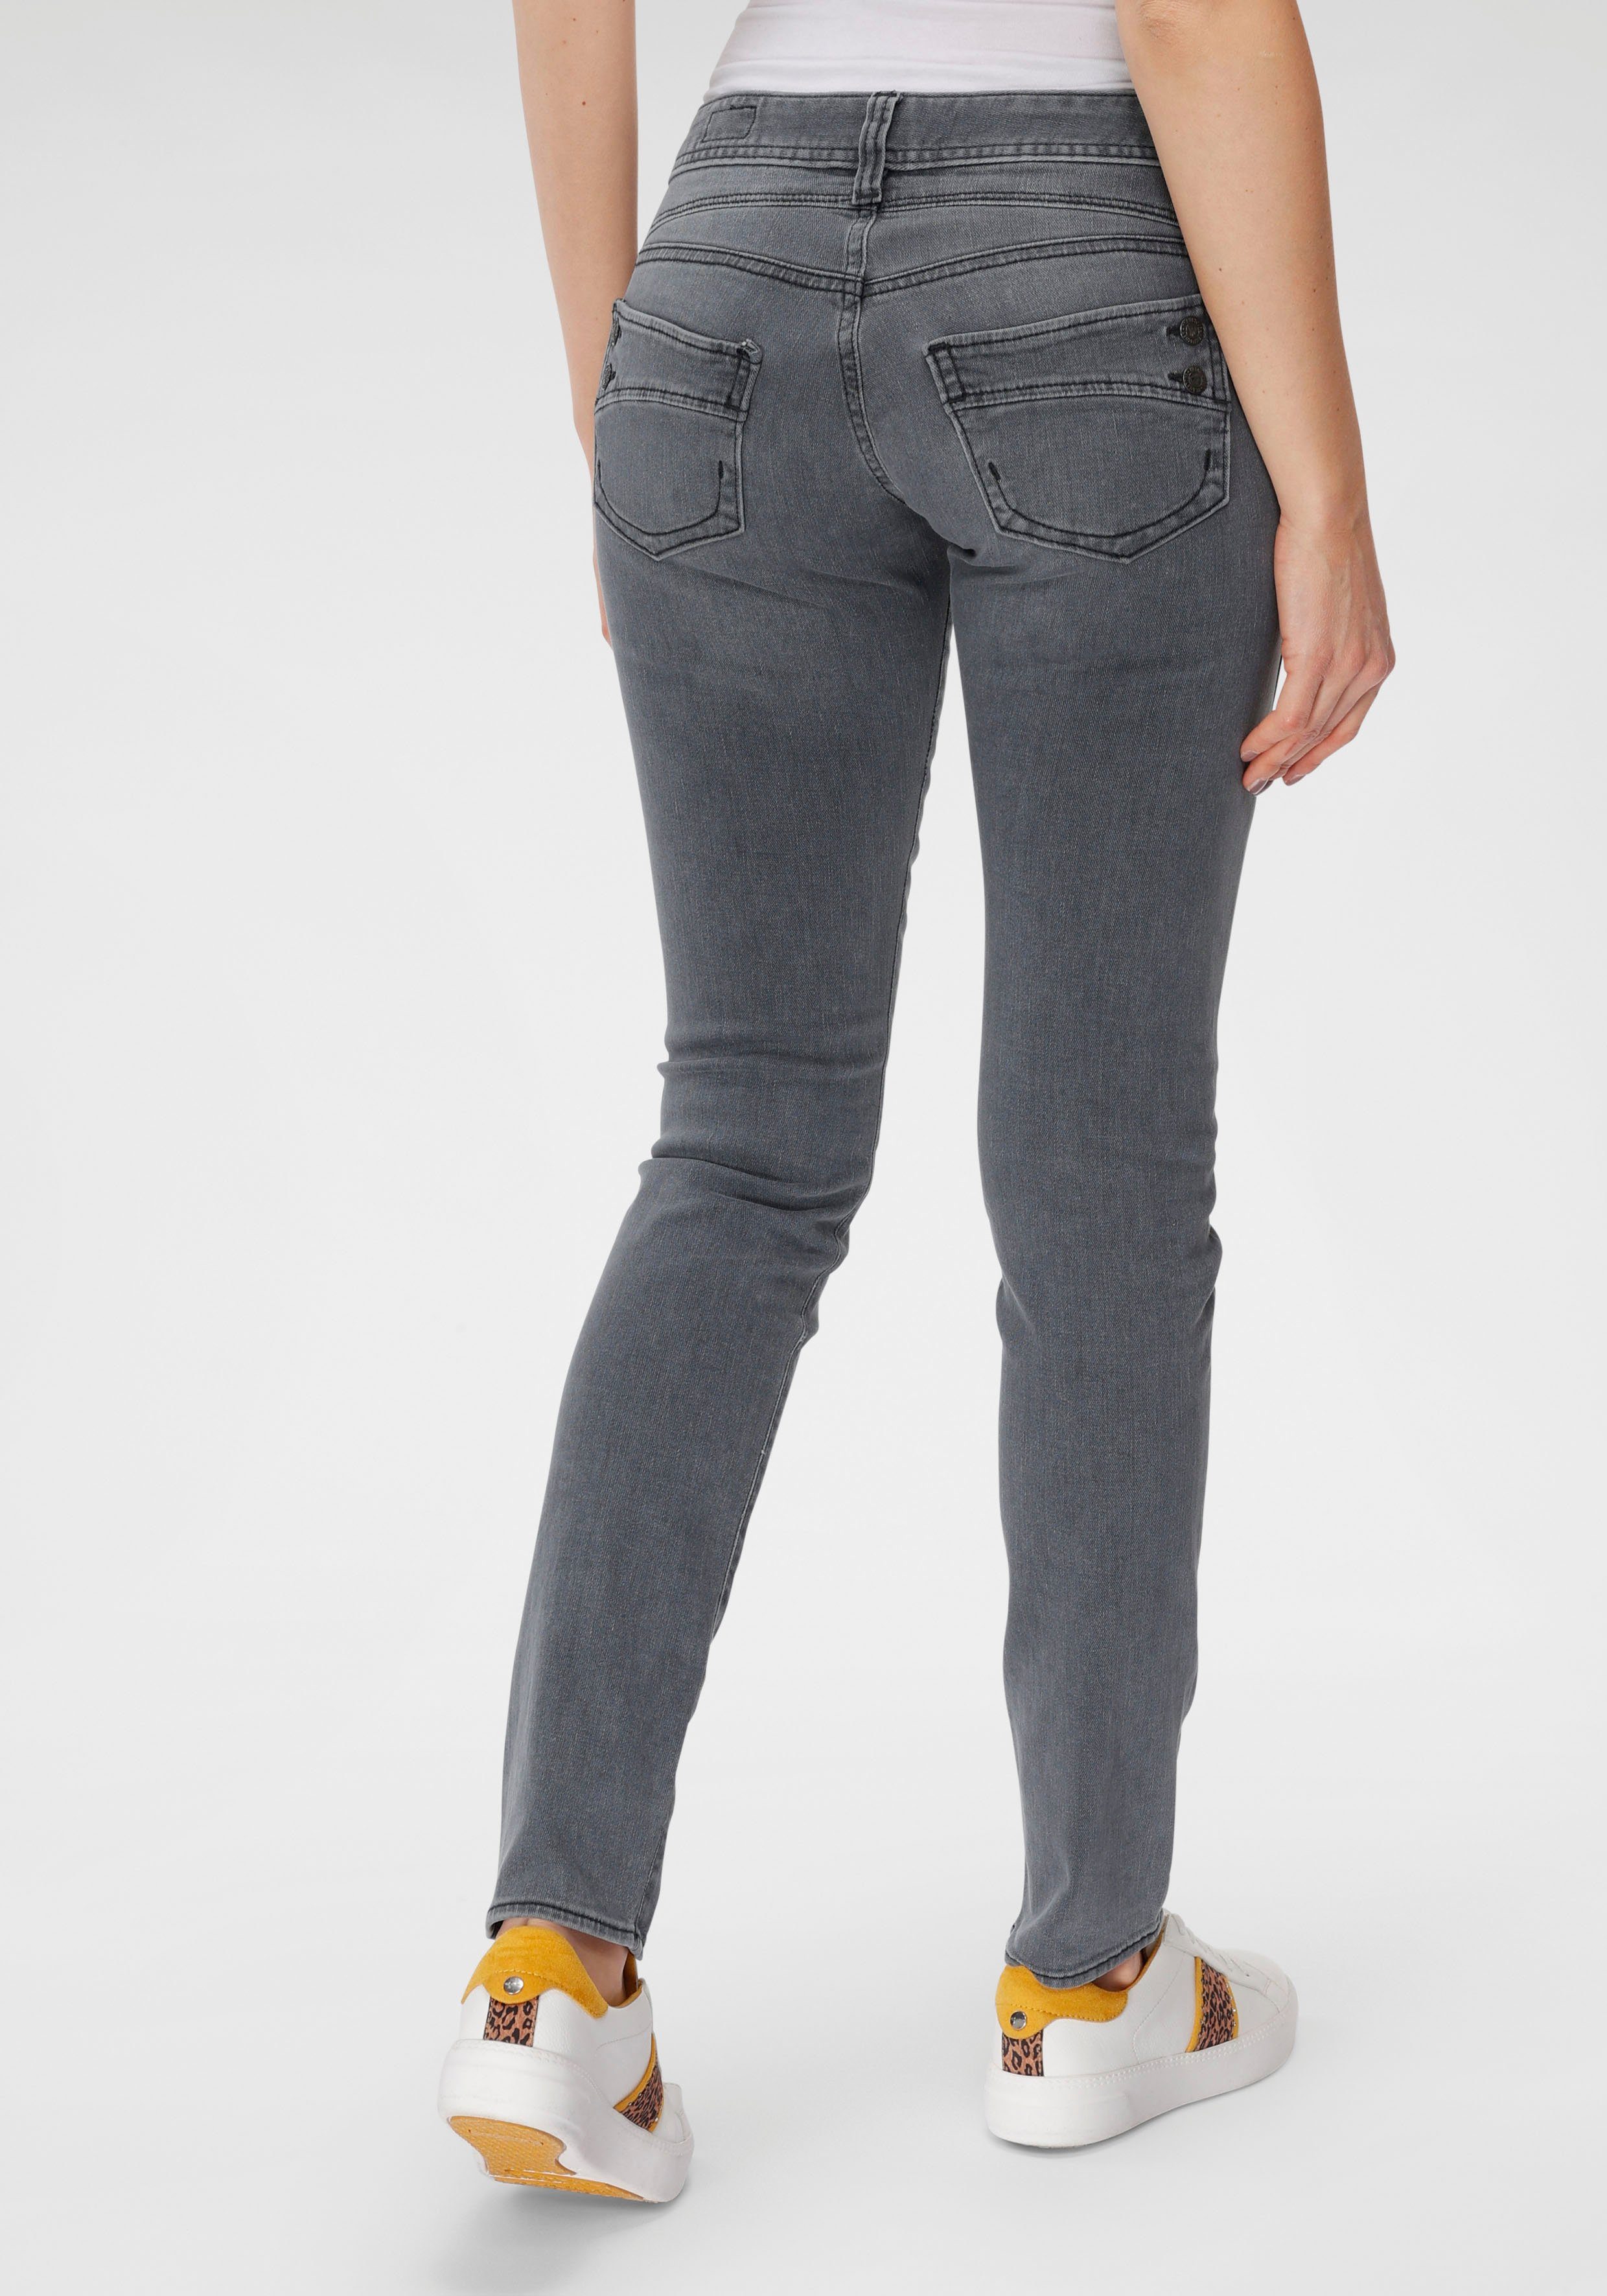 Herrlicher Slim-fit-Jeans »PIPER SLIM DENIM BLACK CASHMERE TOUCH« mit Figur  streckendem Beinverlauf online kaufen | OTTO